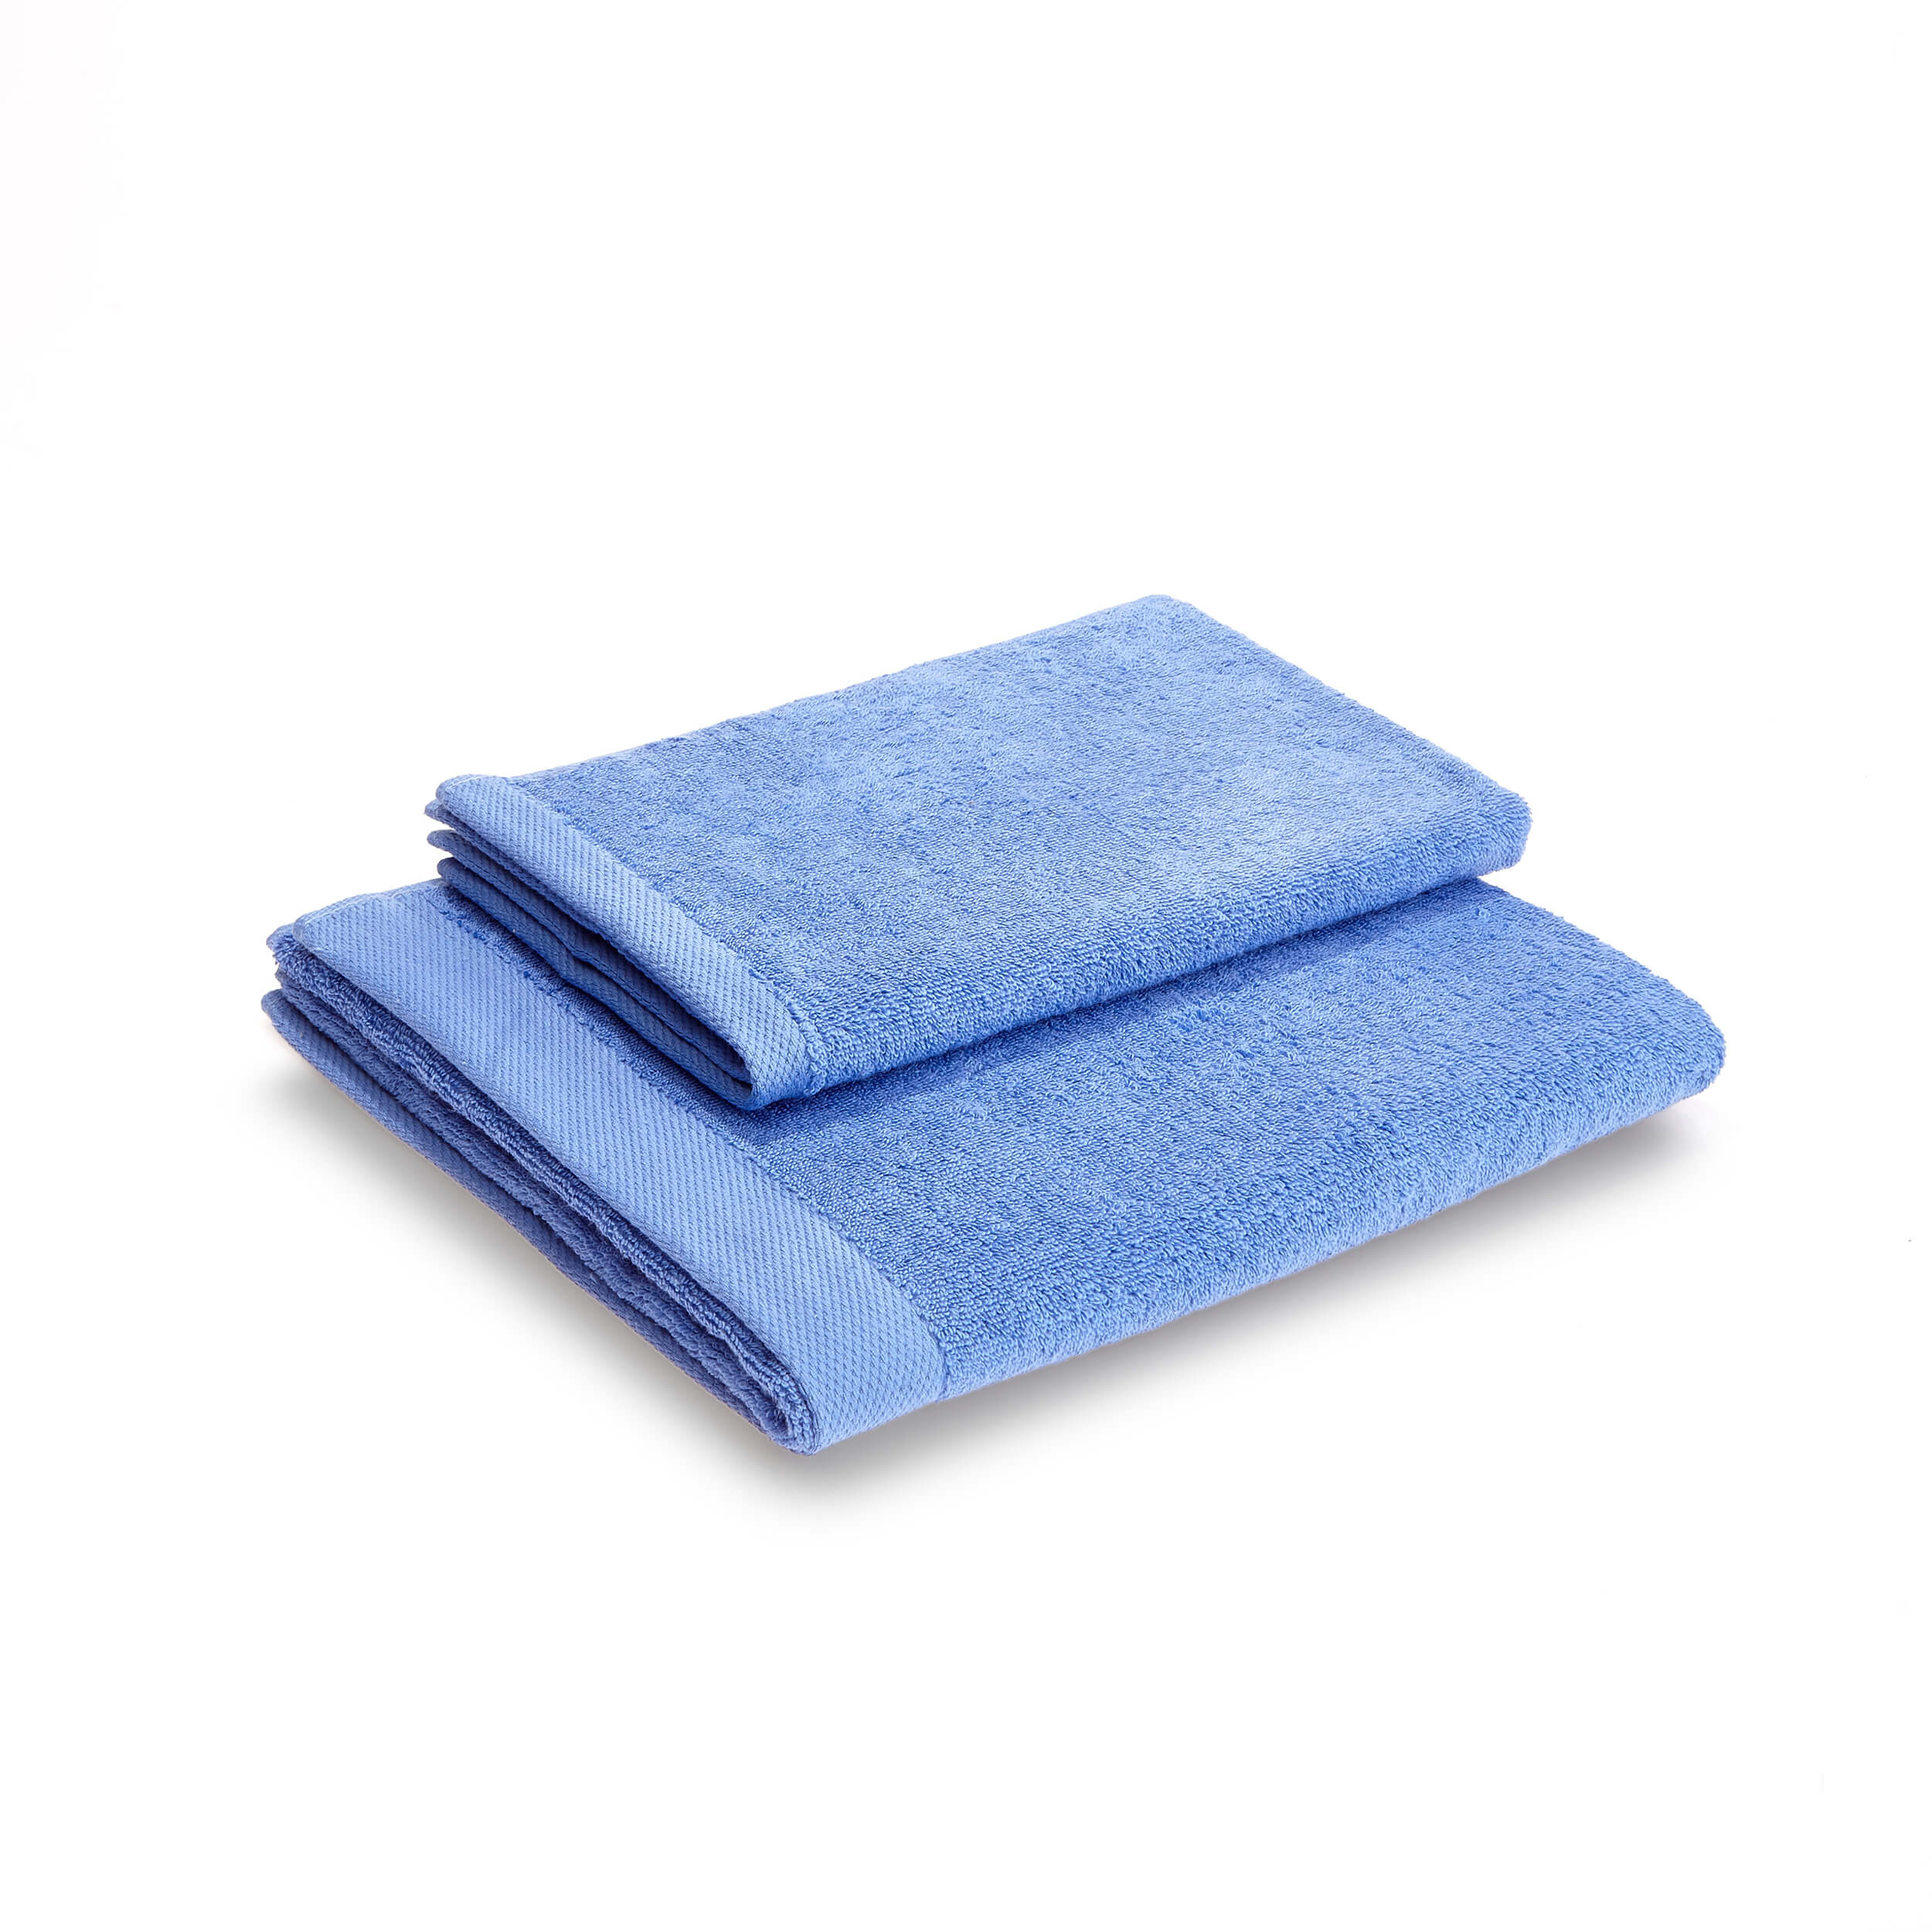 Итальянское полотенце Mikado Lavanda Blu